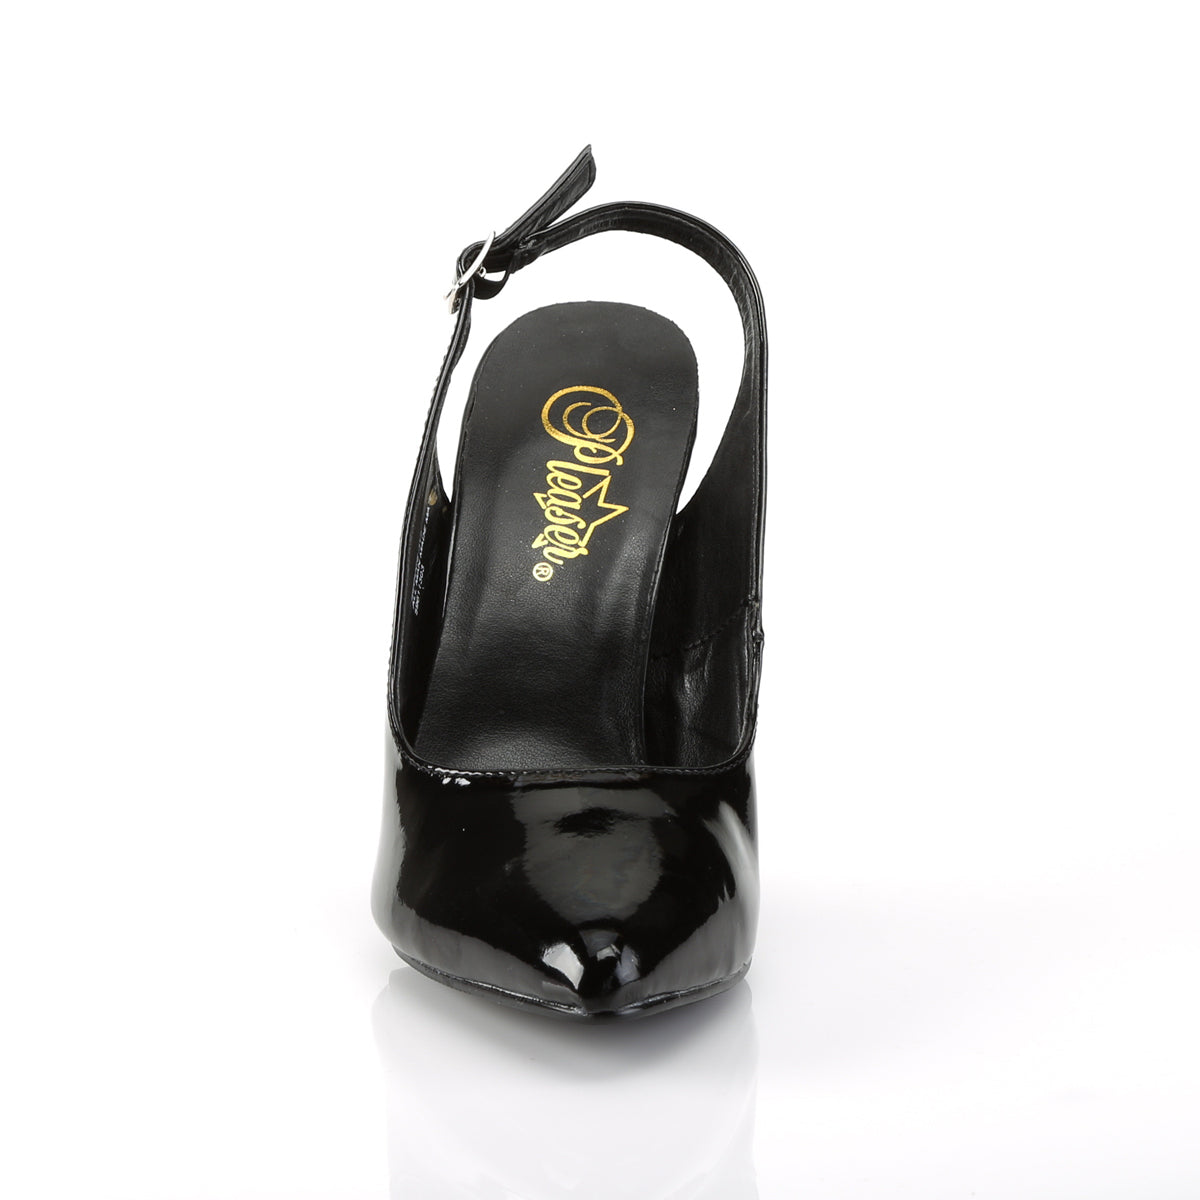 SEDUCE-317 Pleaser Shoe 5" Heel Black Patent Fetish Footwear-Pleaser- Sexy Shoes Alternative Footwear